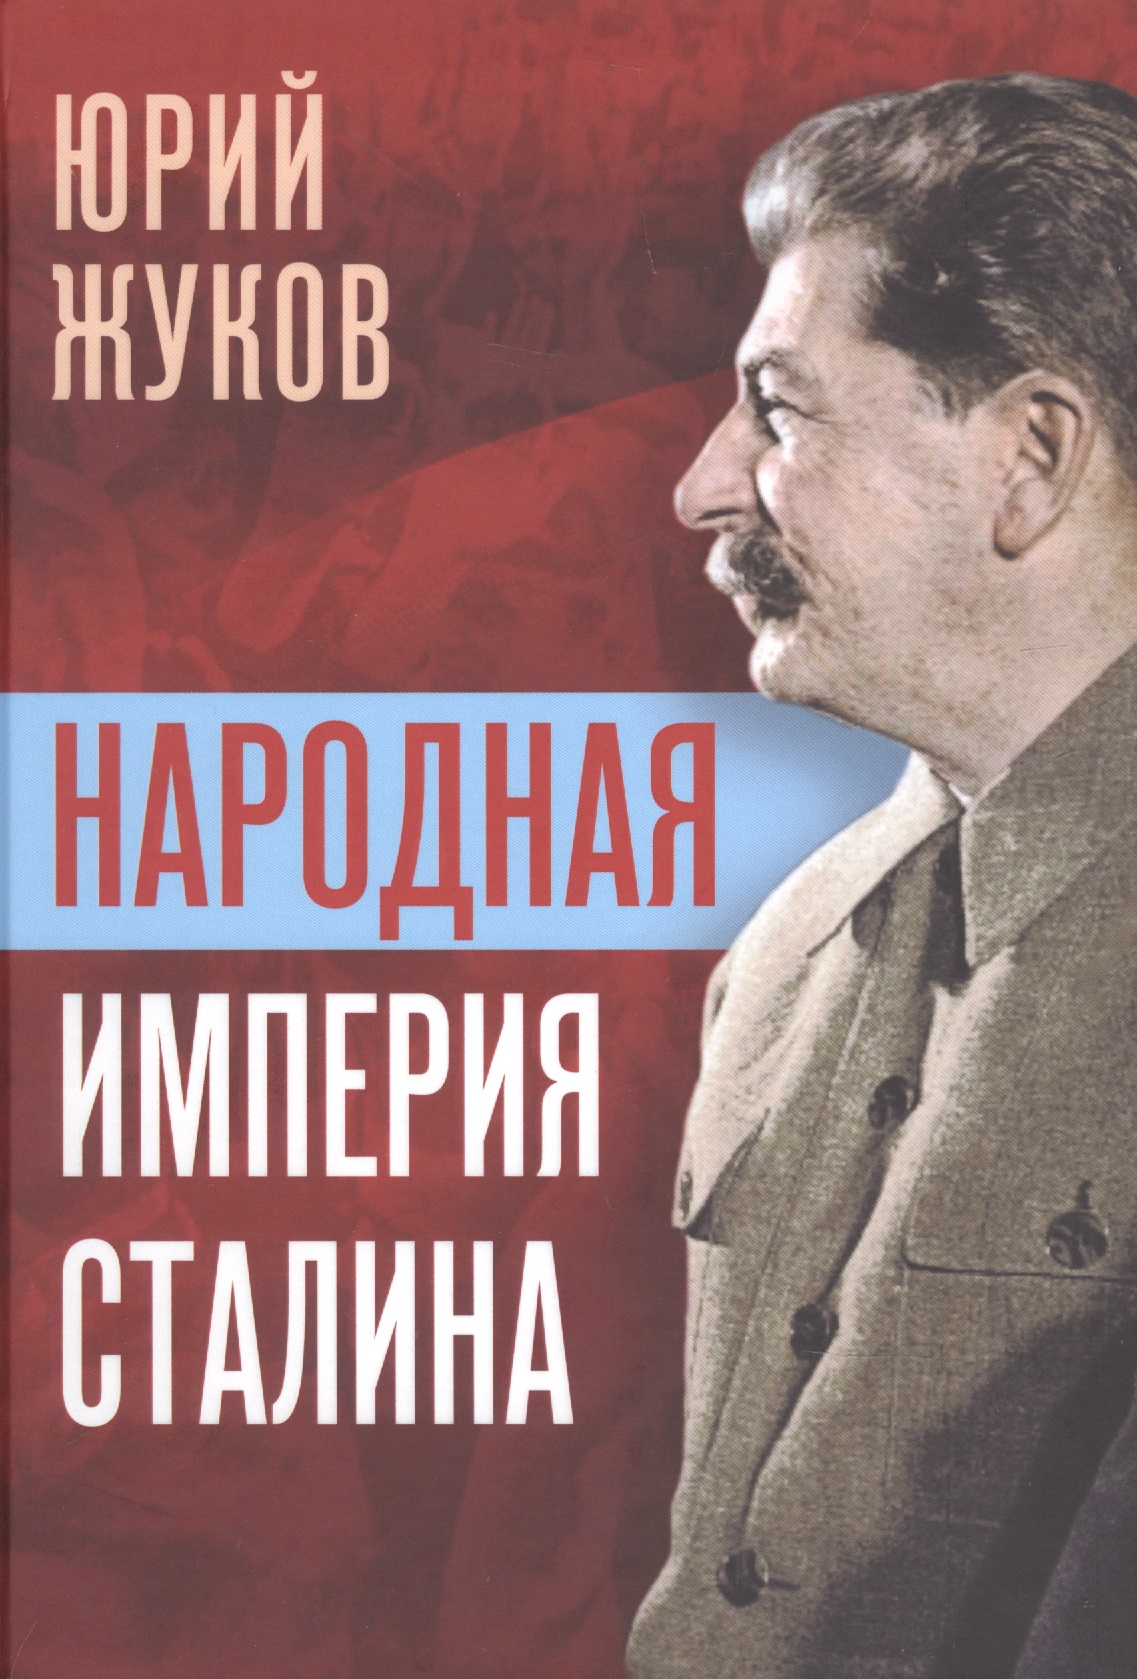 Жуков Юрий Николаевич Народная империя Сталина жуков юрий николаевич настольная книга сталиниста